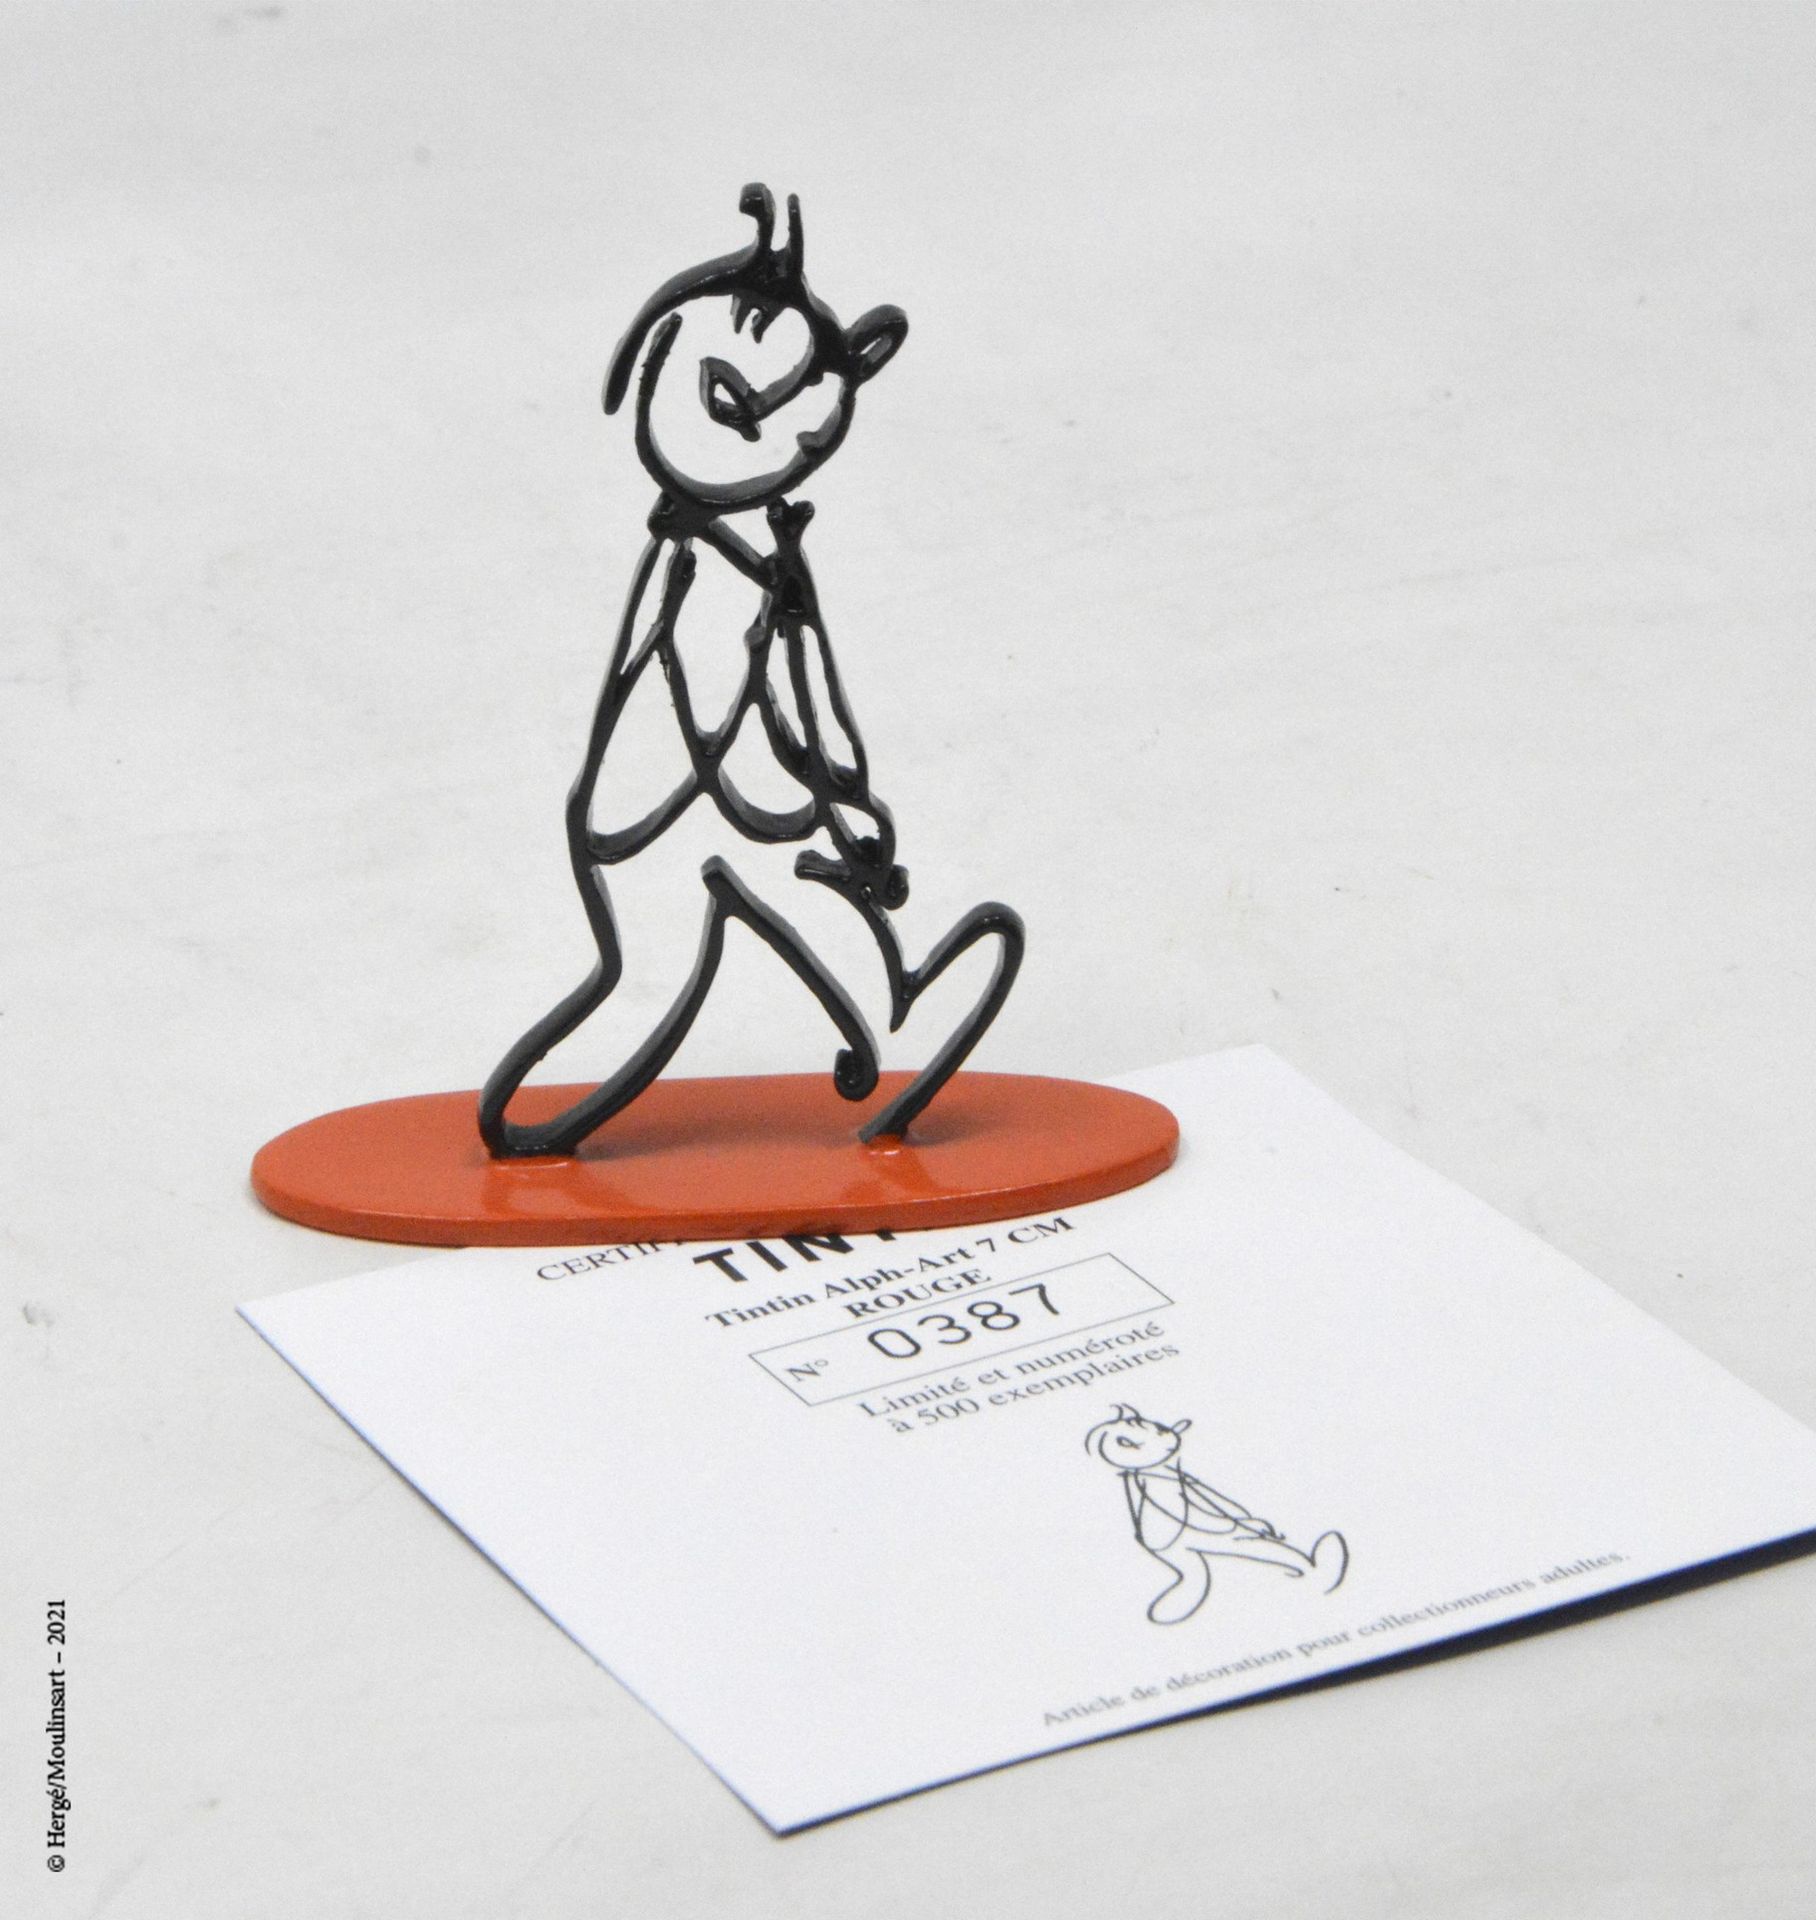 TINTIN HERGÉ/MOULINSART

Hergé : Moulinsart Plomb/Collection Sculpture

Tintin A&hellip;